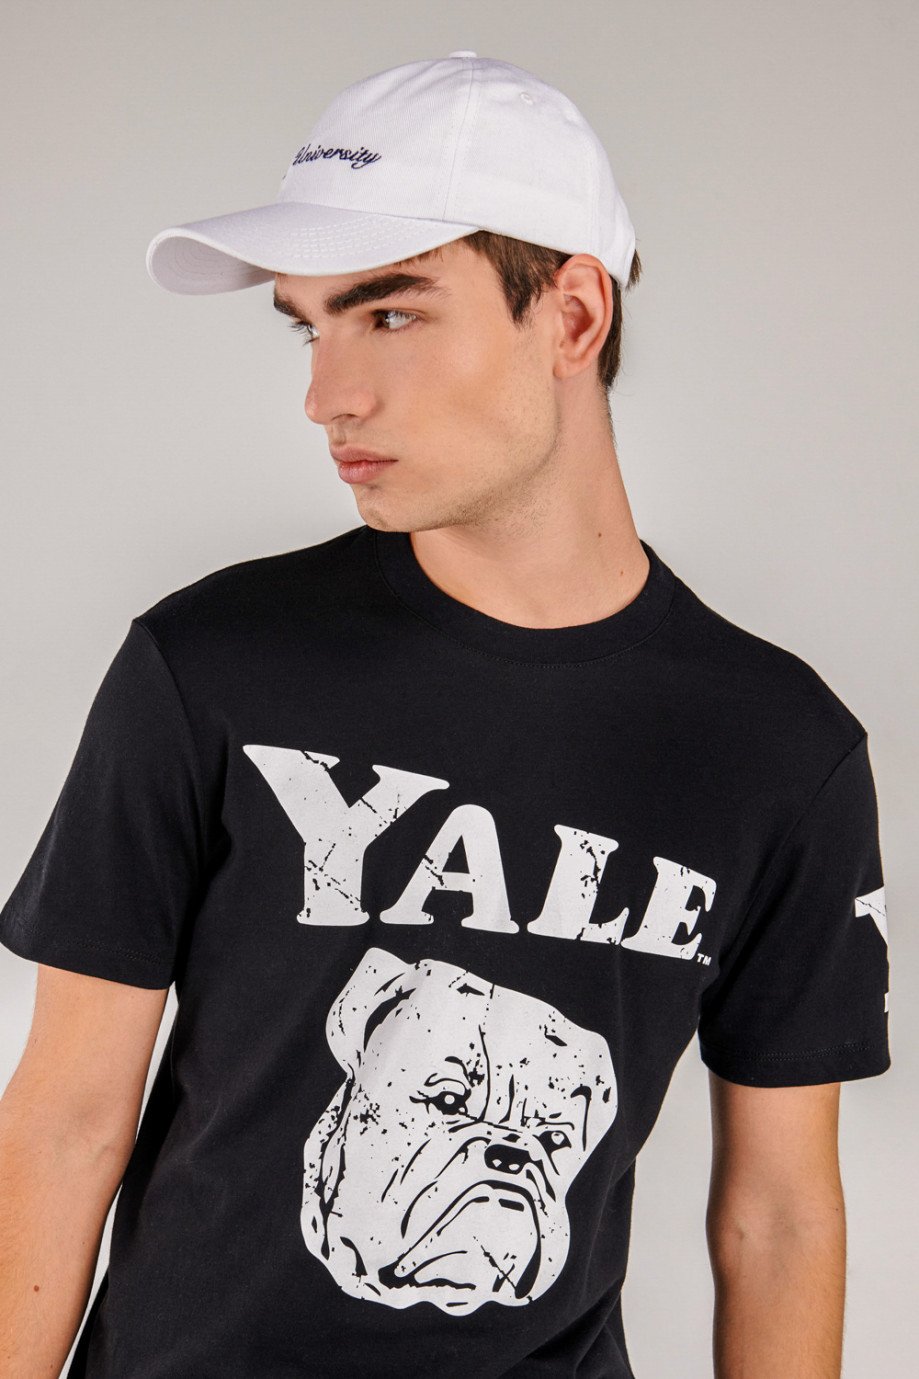 Camiseta, con estampado en frente y manga, de Yale